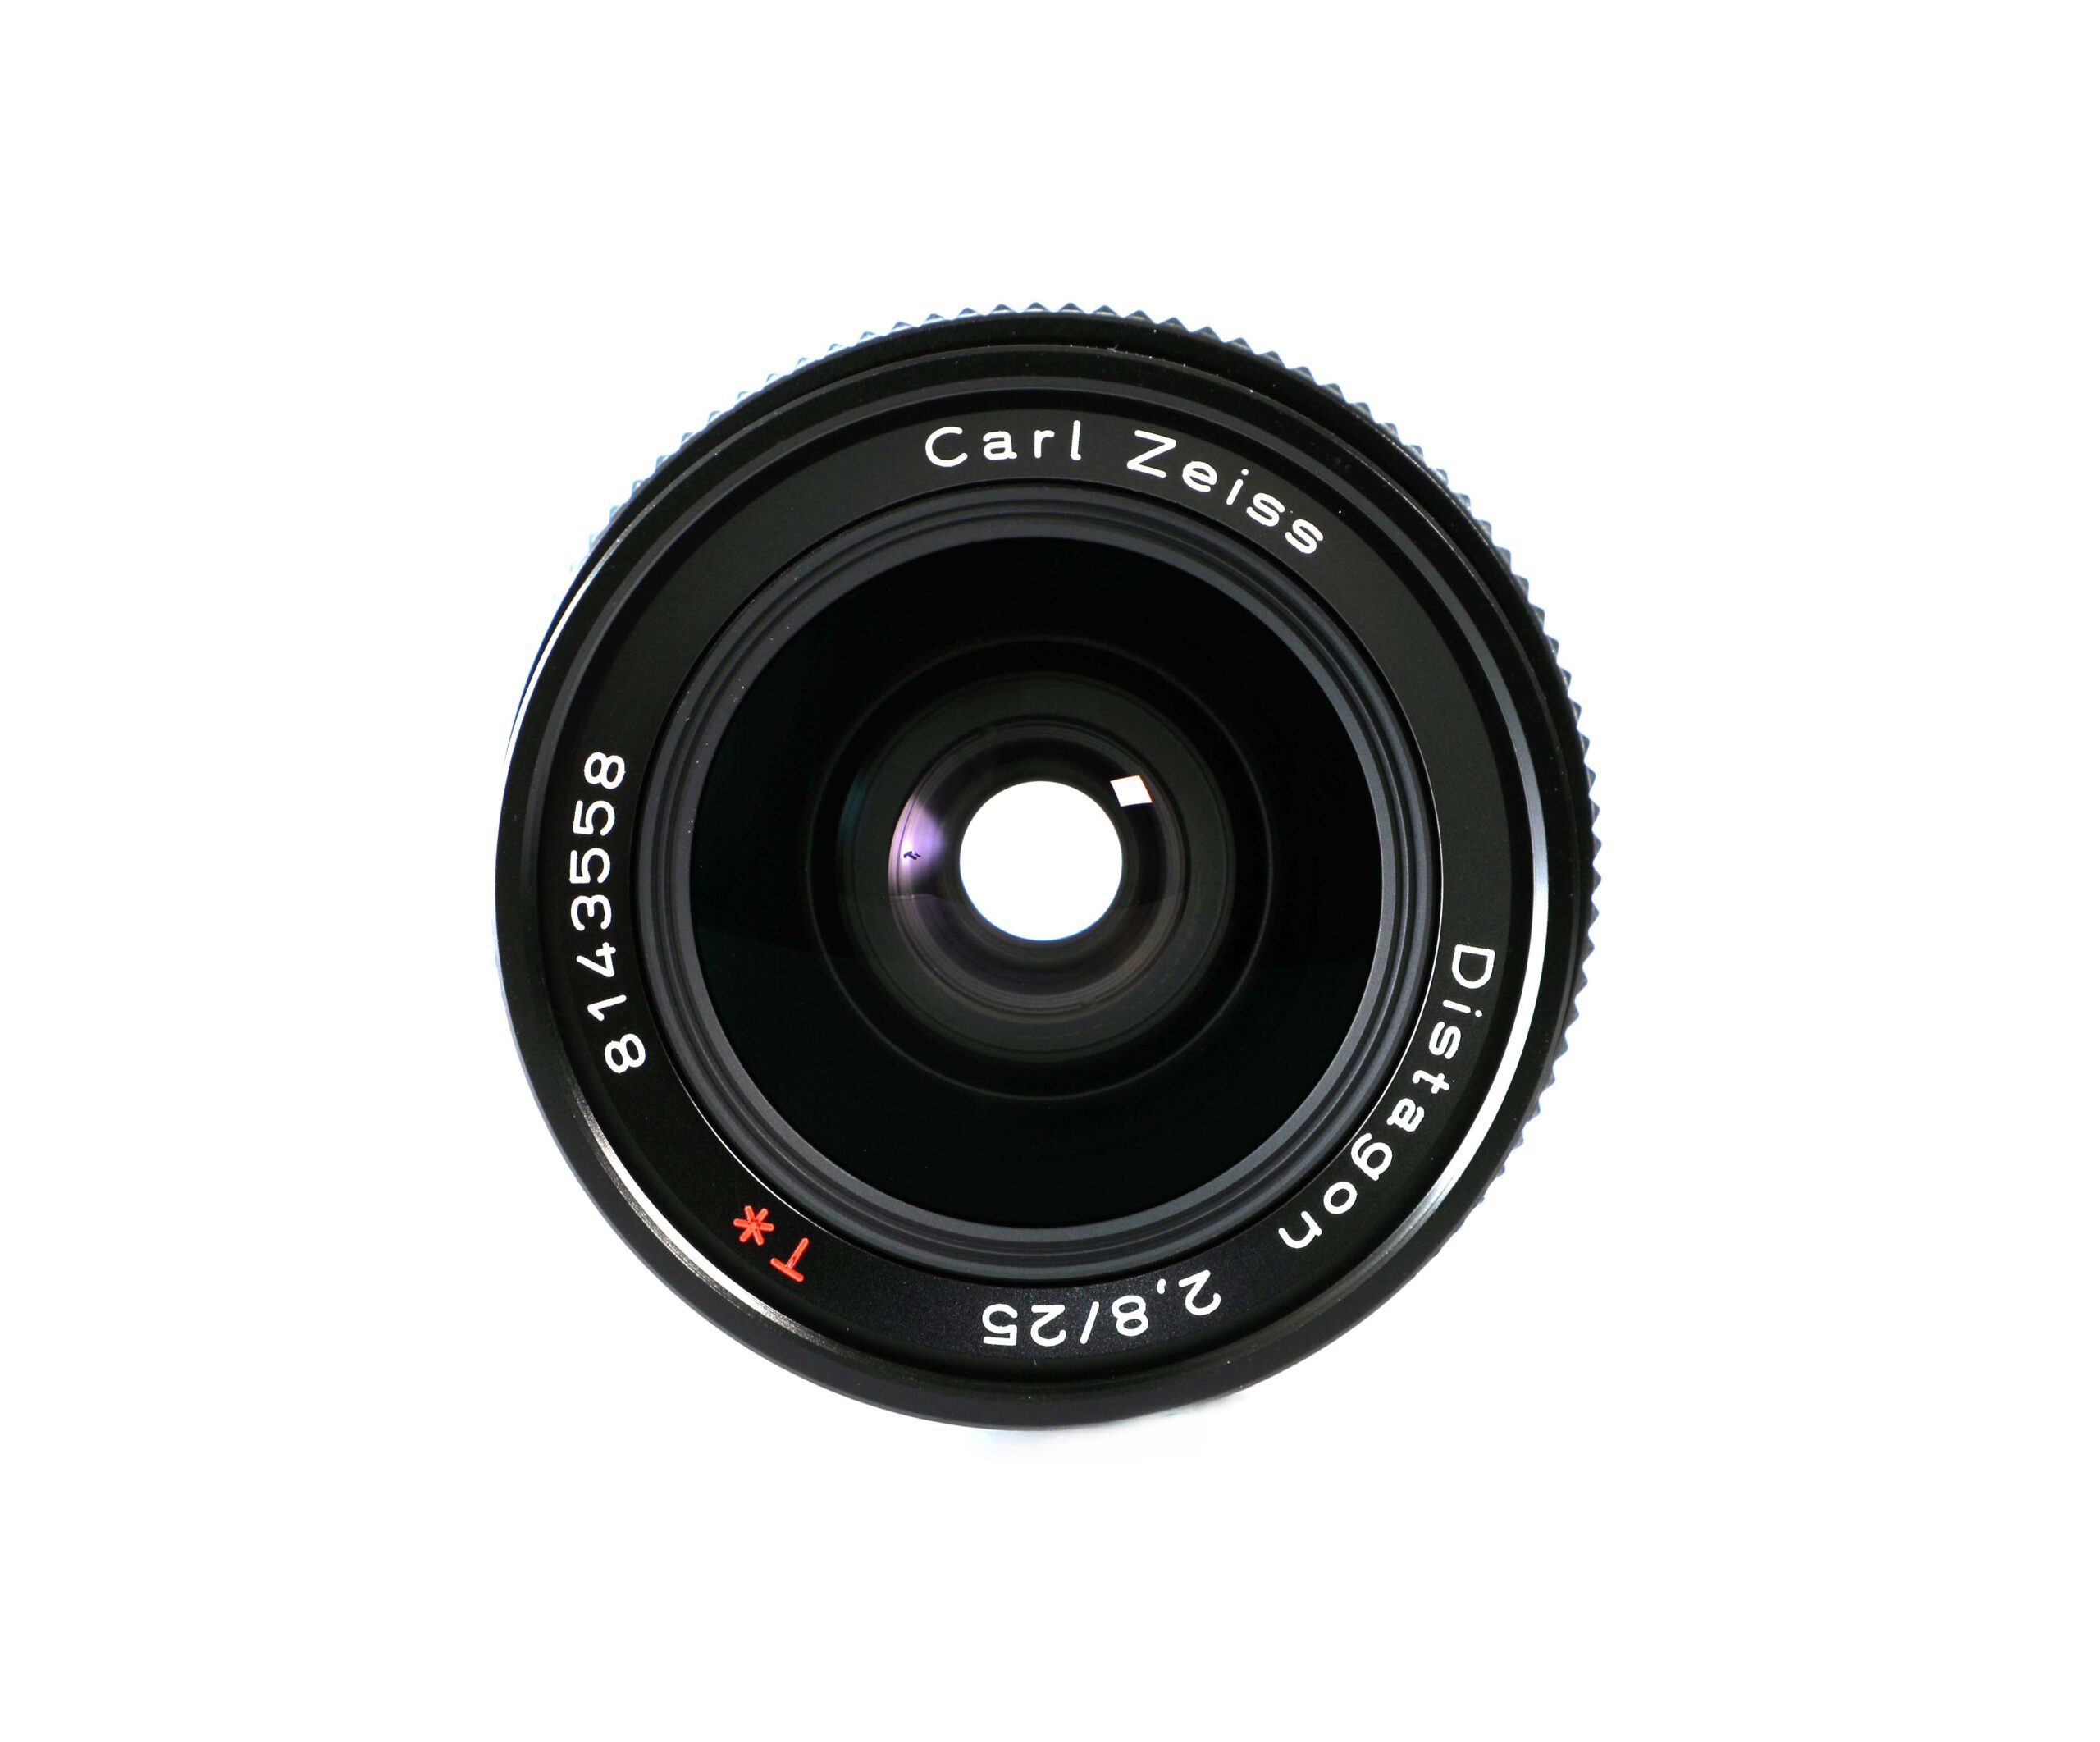 CONTAX Carl Zeiss Distagon 25mm F2.8 T* MMJ